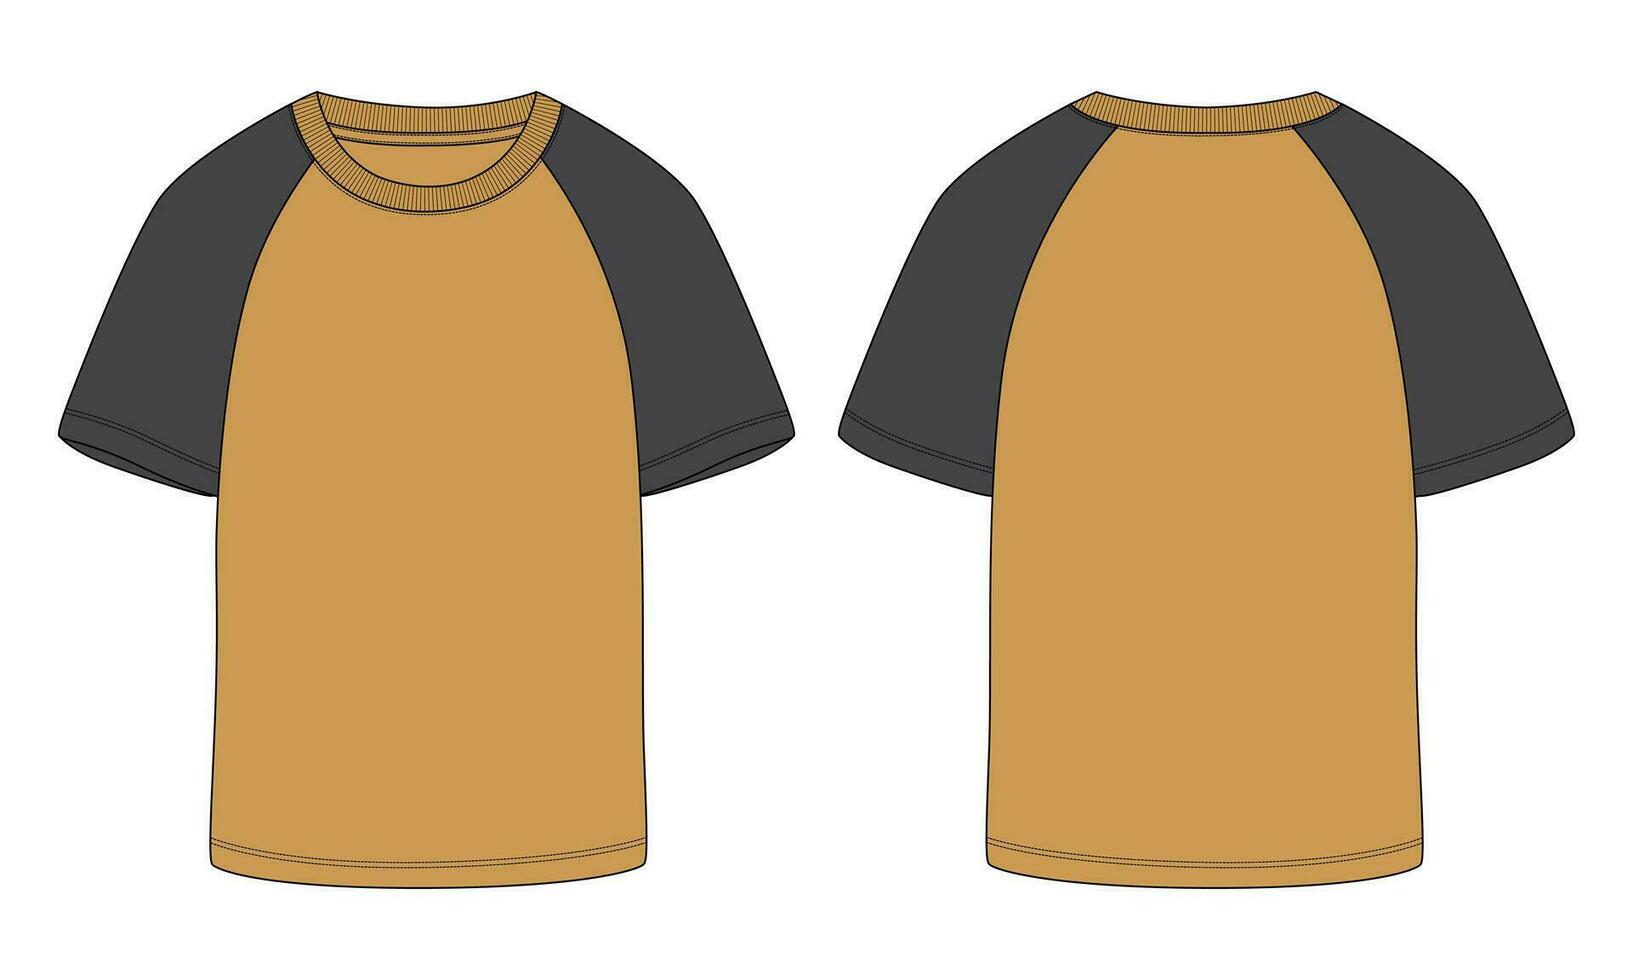 kurzarm t-shirt technische mode flache skizze vektor illustration vorlage vorder- und rückansichten.